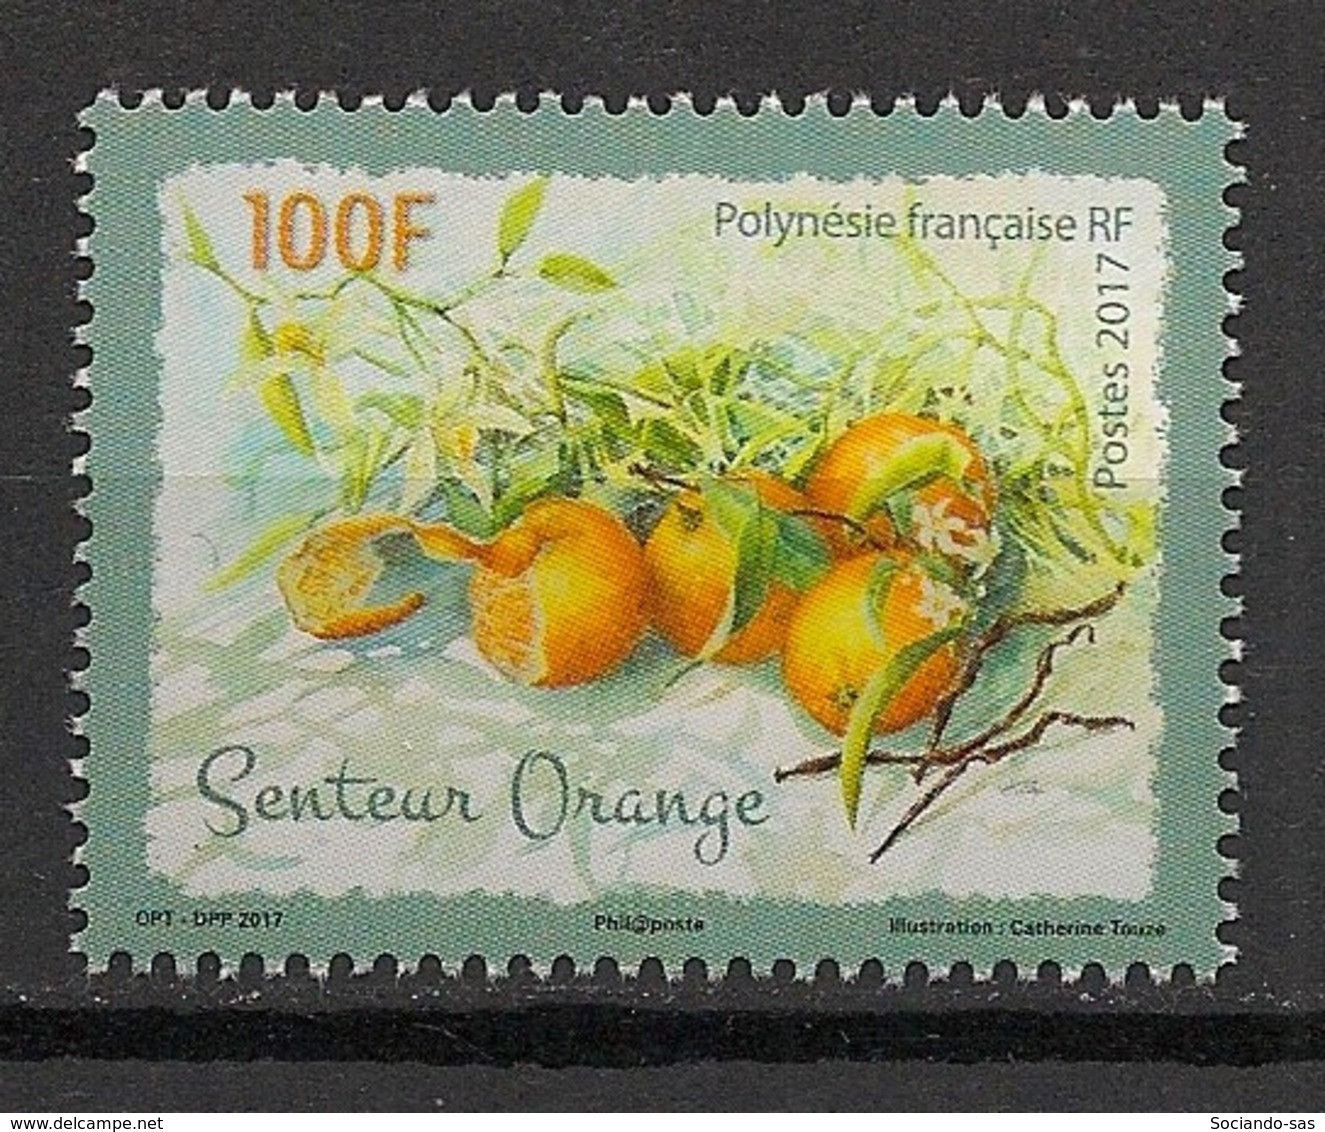 POLYNESIE - 2017 - N°YT. 1155 - Fruits / Orange - Neuf Luxe ** / MNH / Postfrisch - Neufs